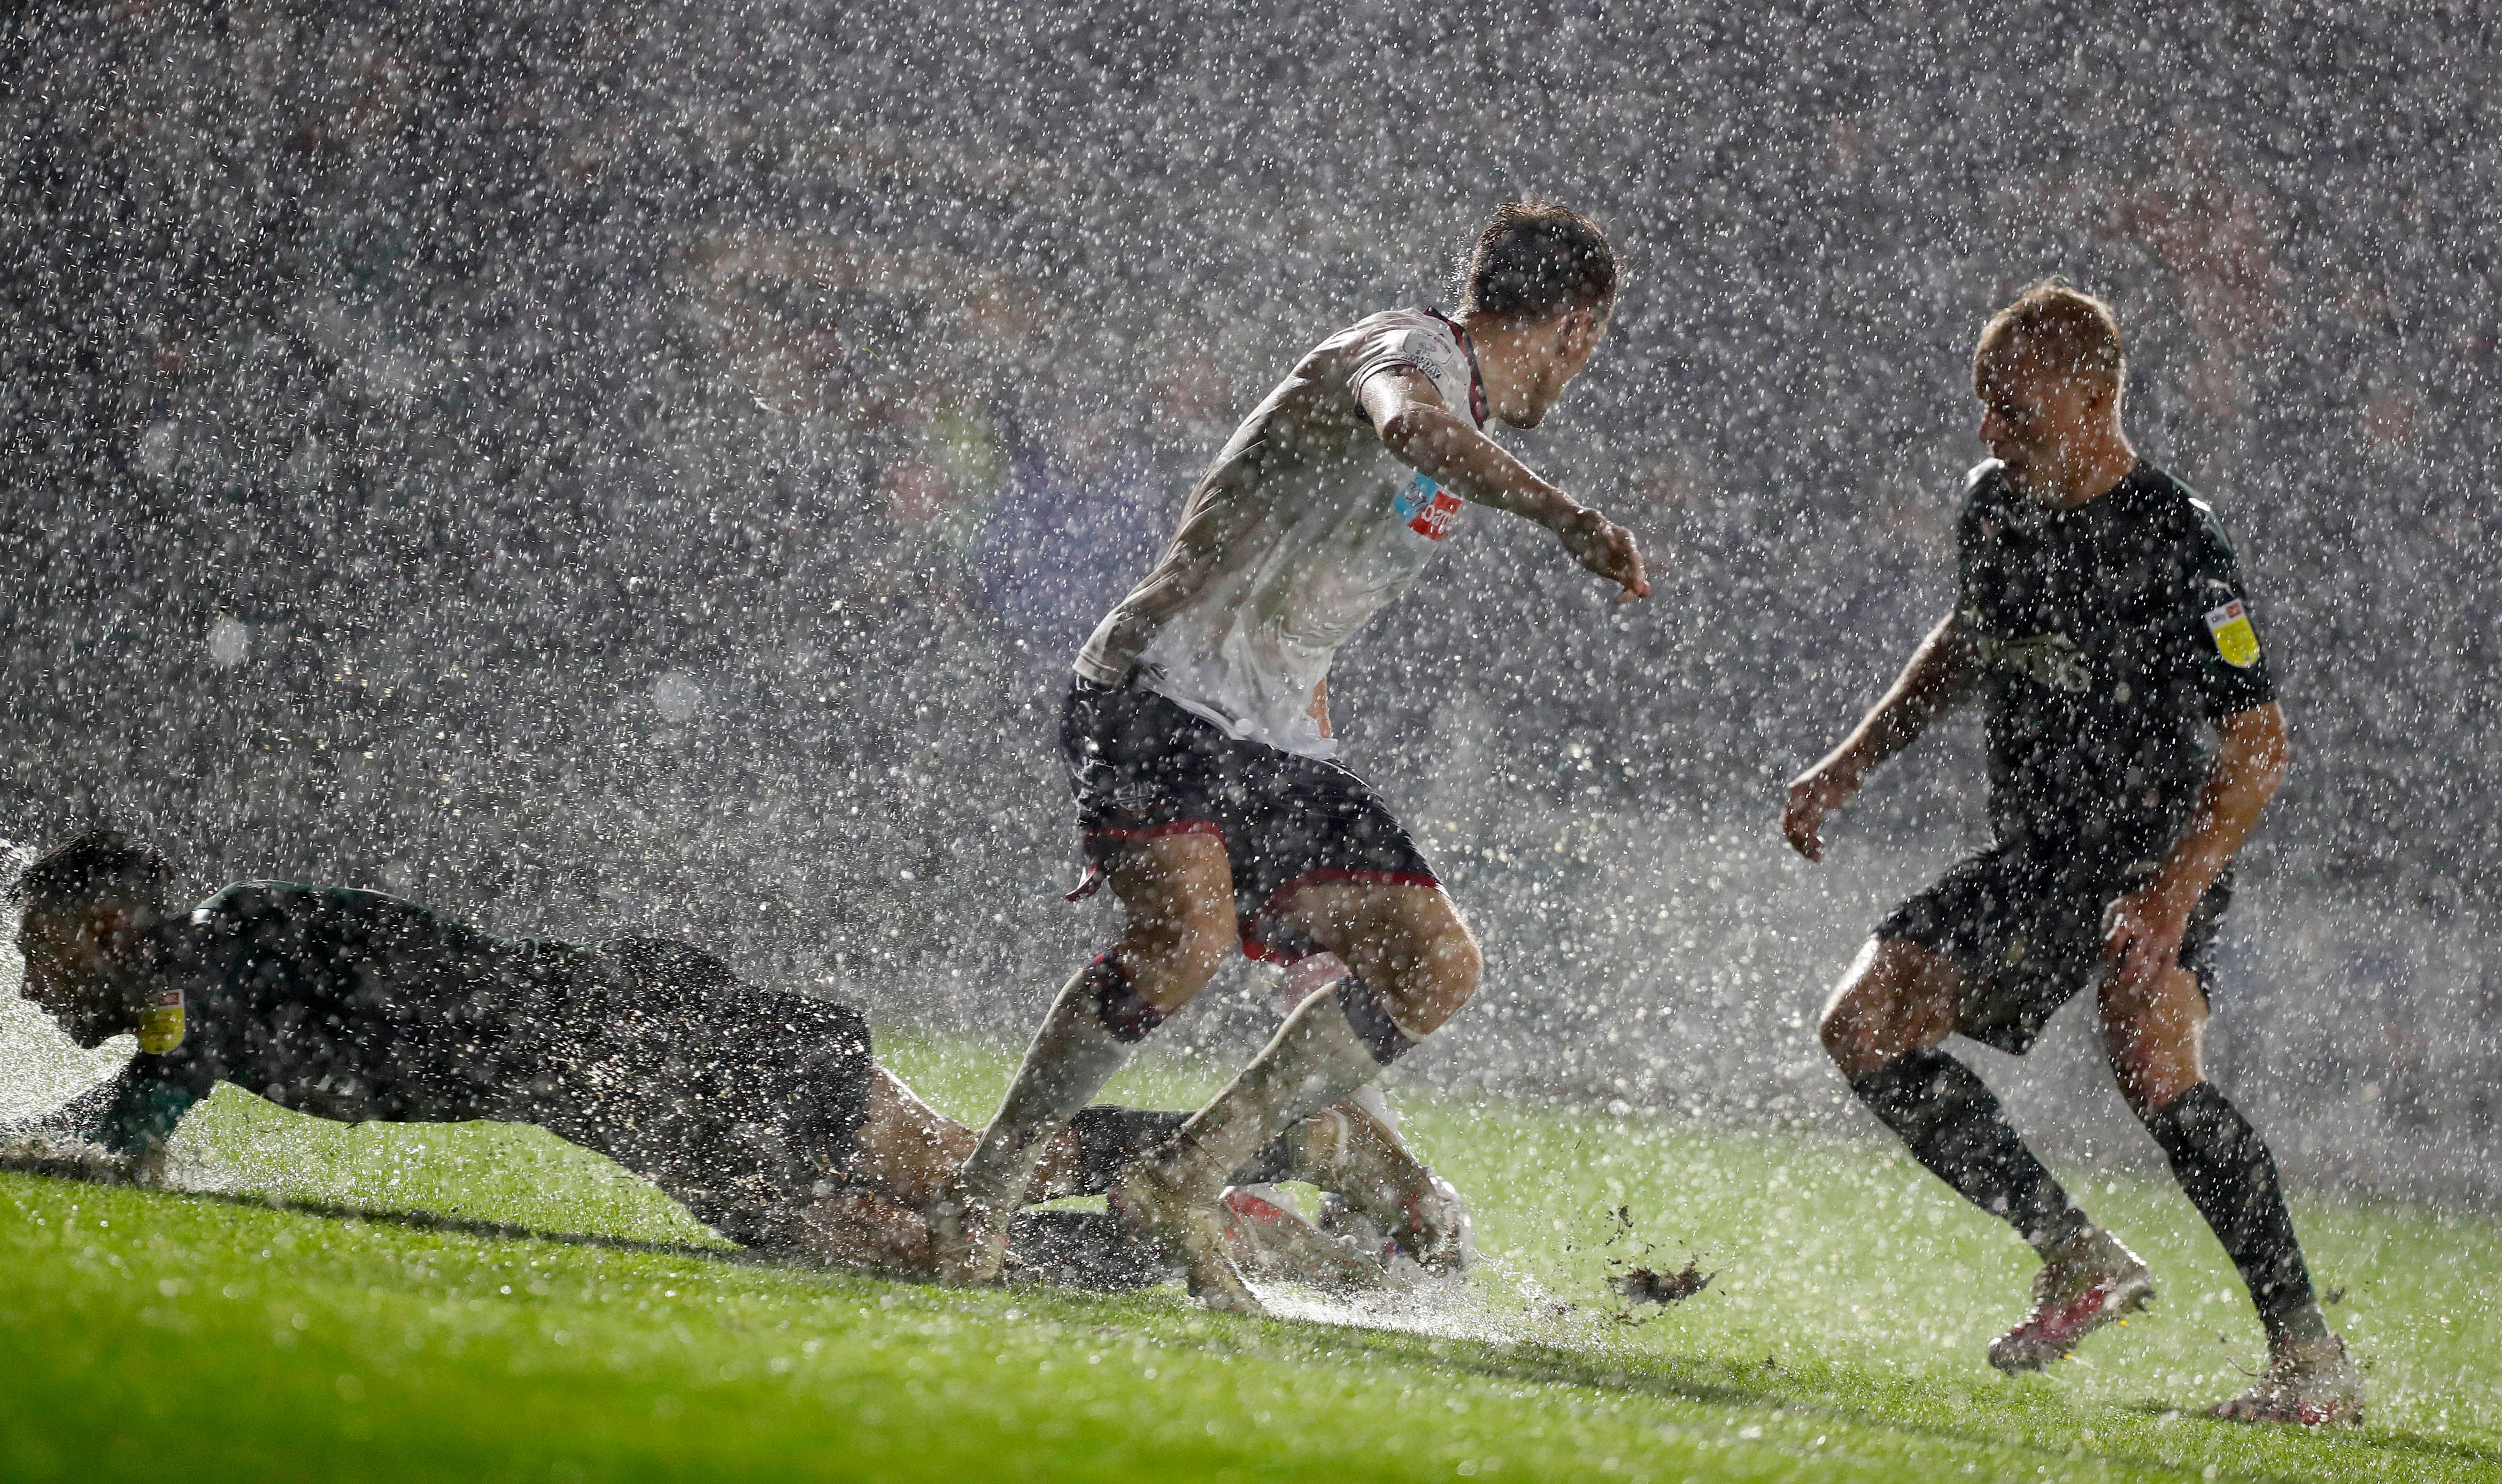 Не футбол, а водное поле: в Англии забили курьезный гол на залитом дождем поле - видео